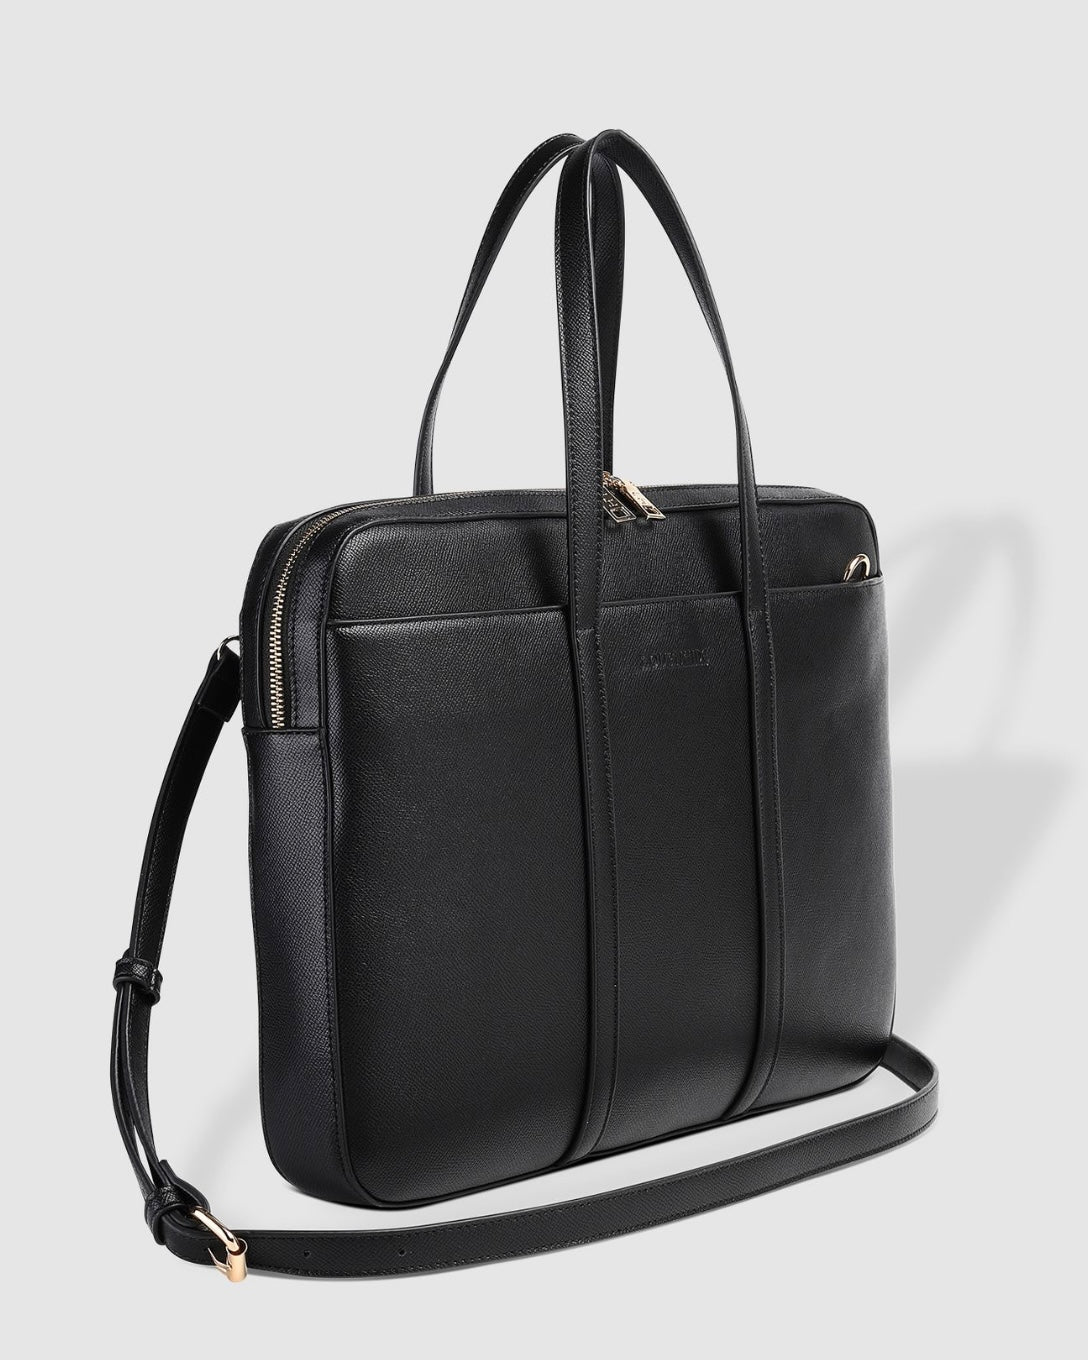 Orleans Laptop Bag (Black)